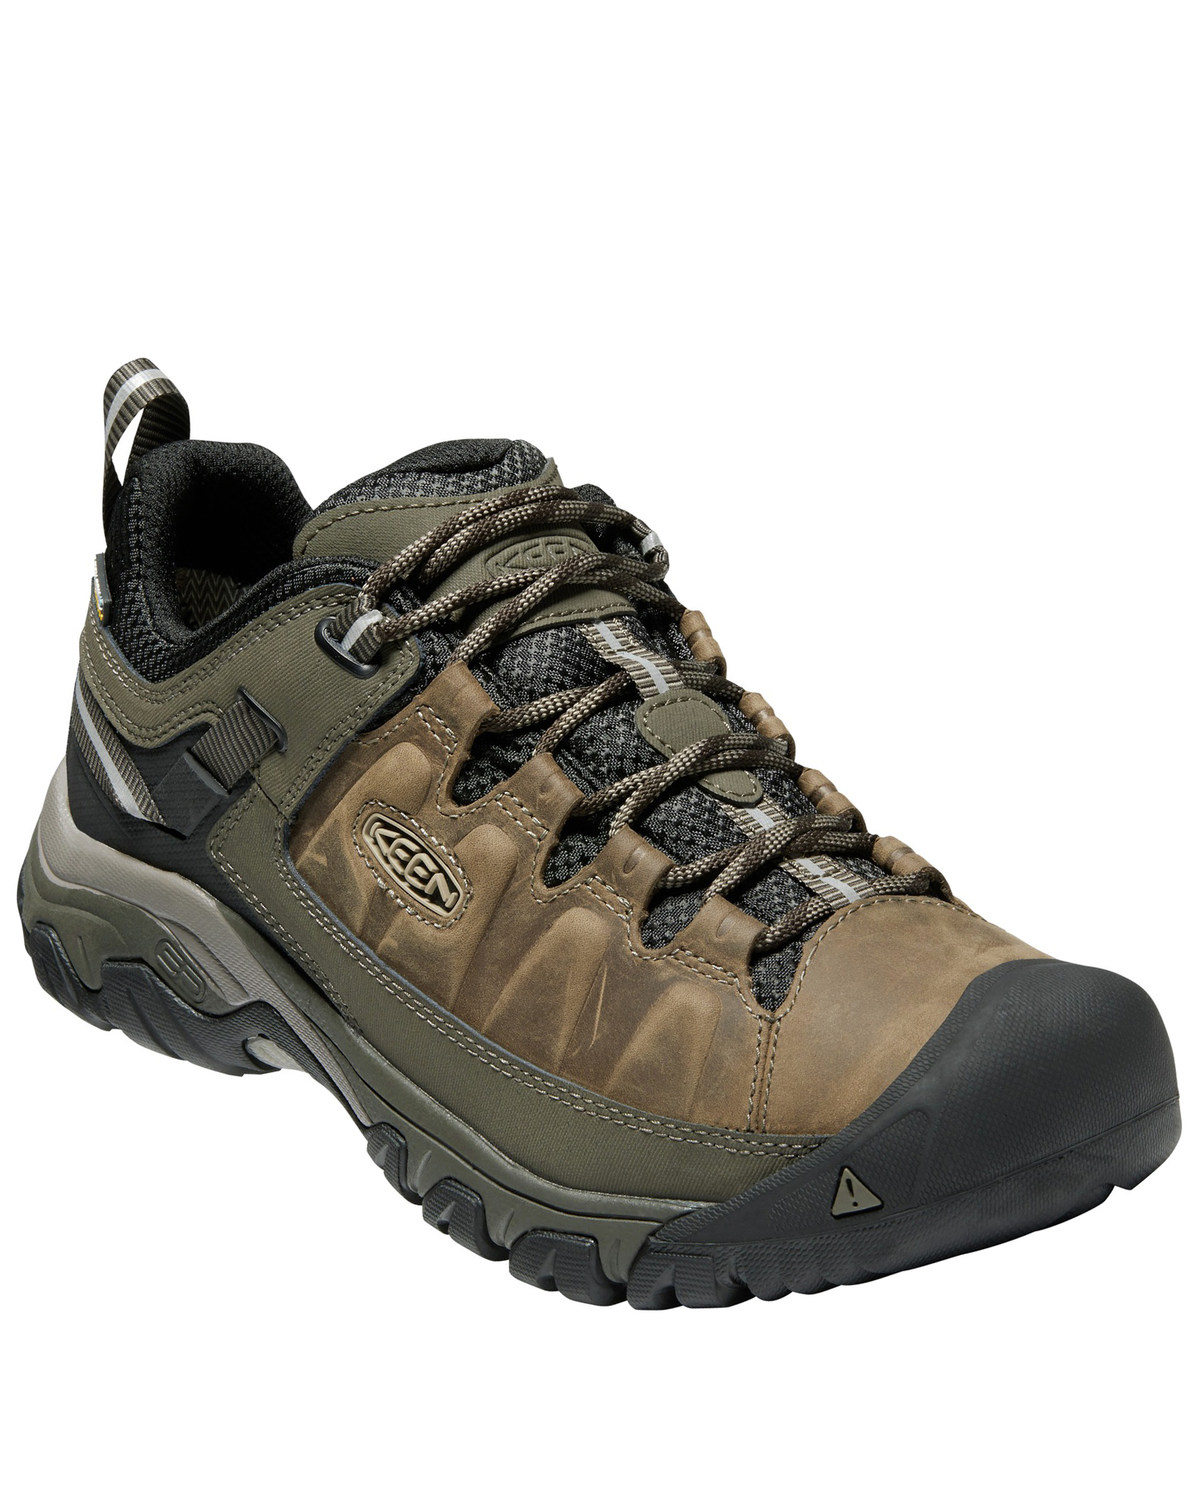 Keen Men's Targhee III Waterproof Hiking Boots